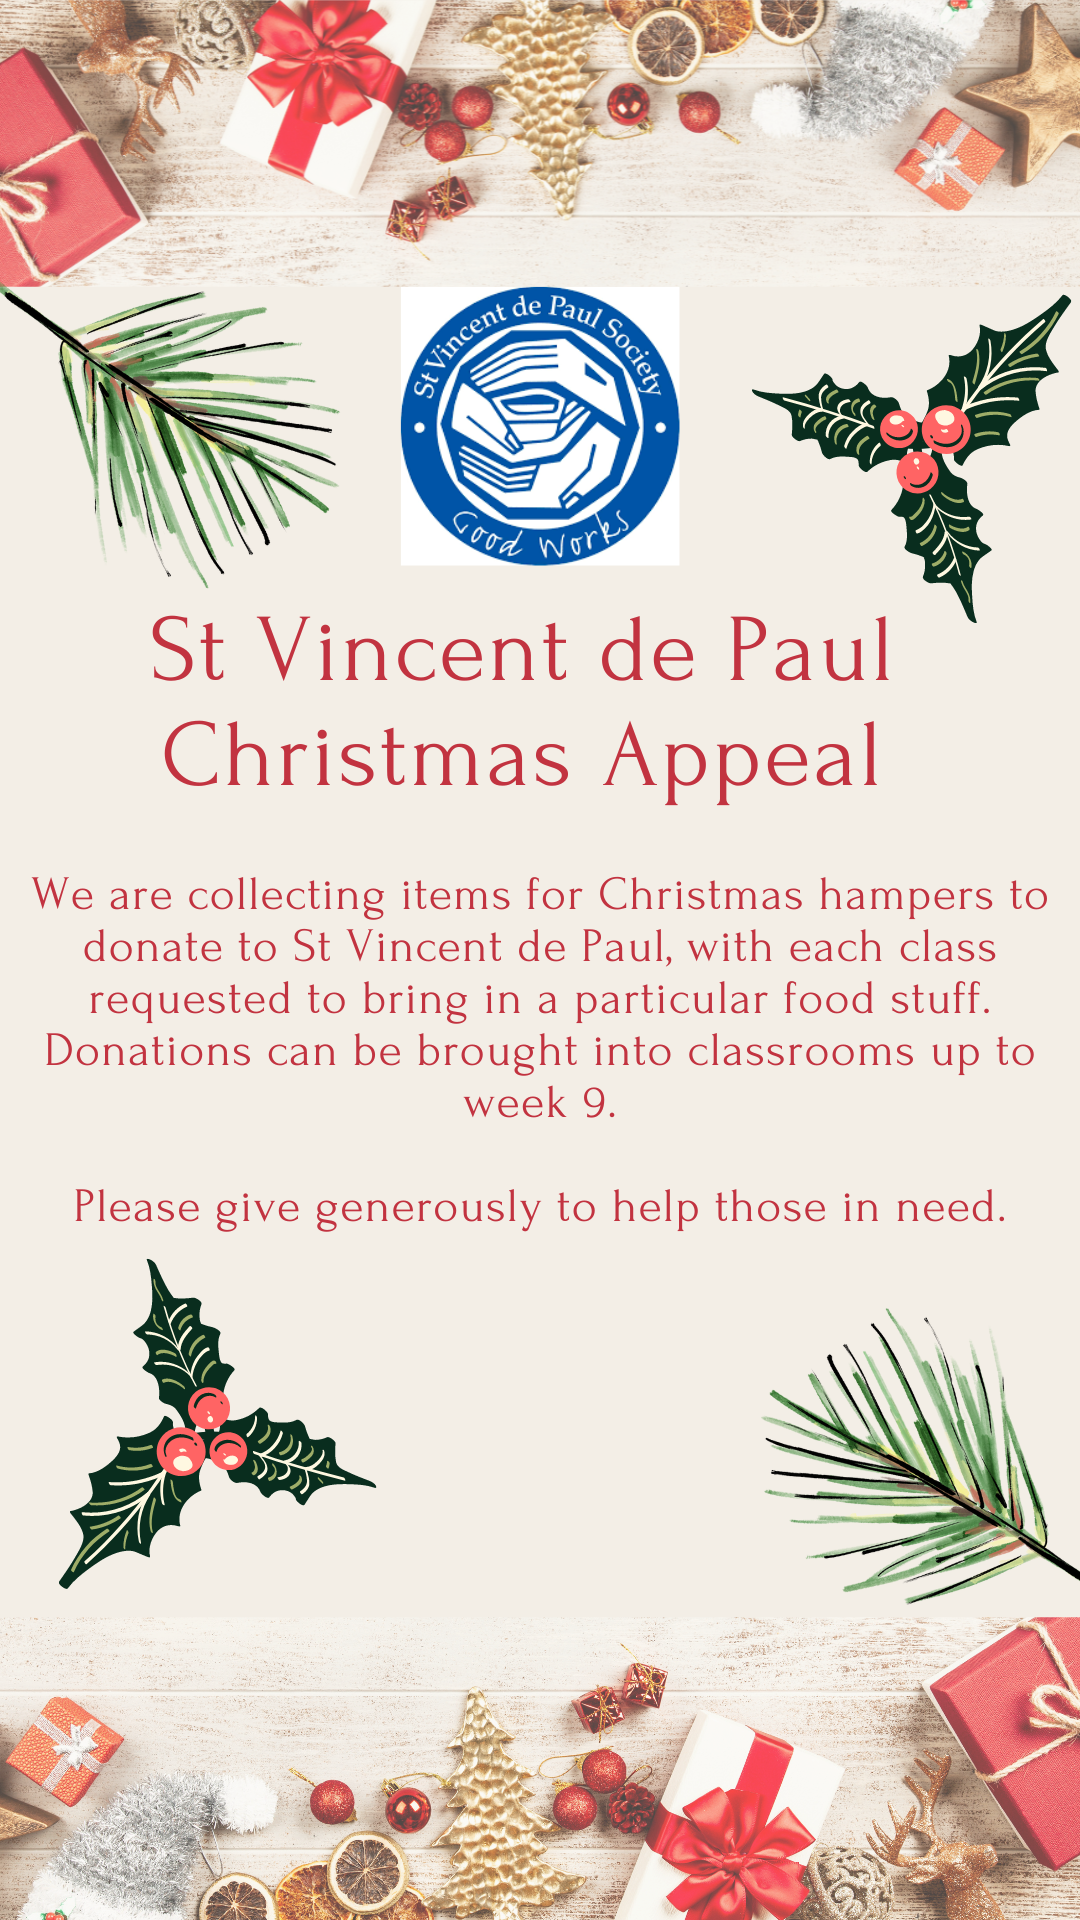 St Vincent de Paul Christmas Appeal